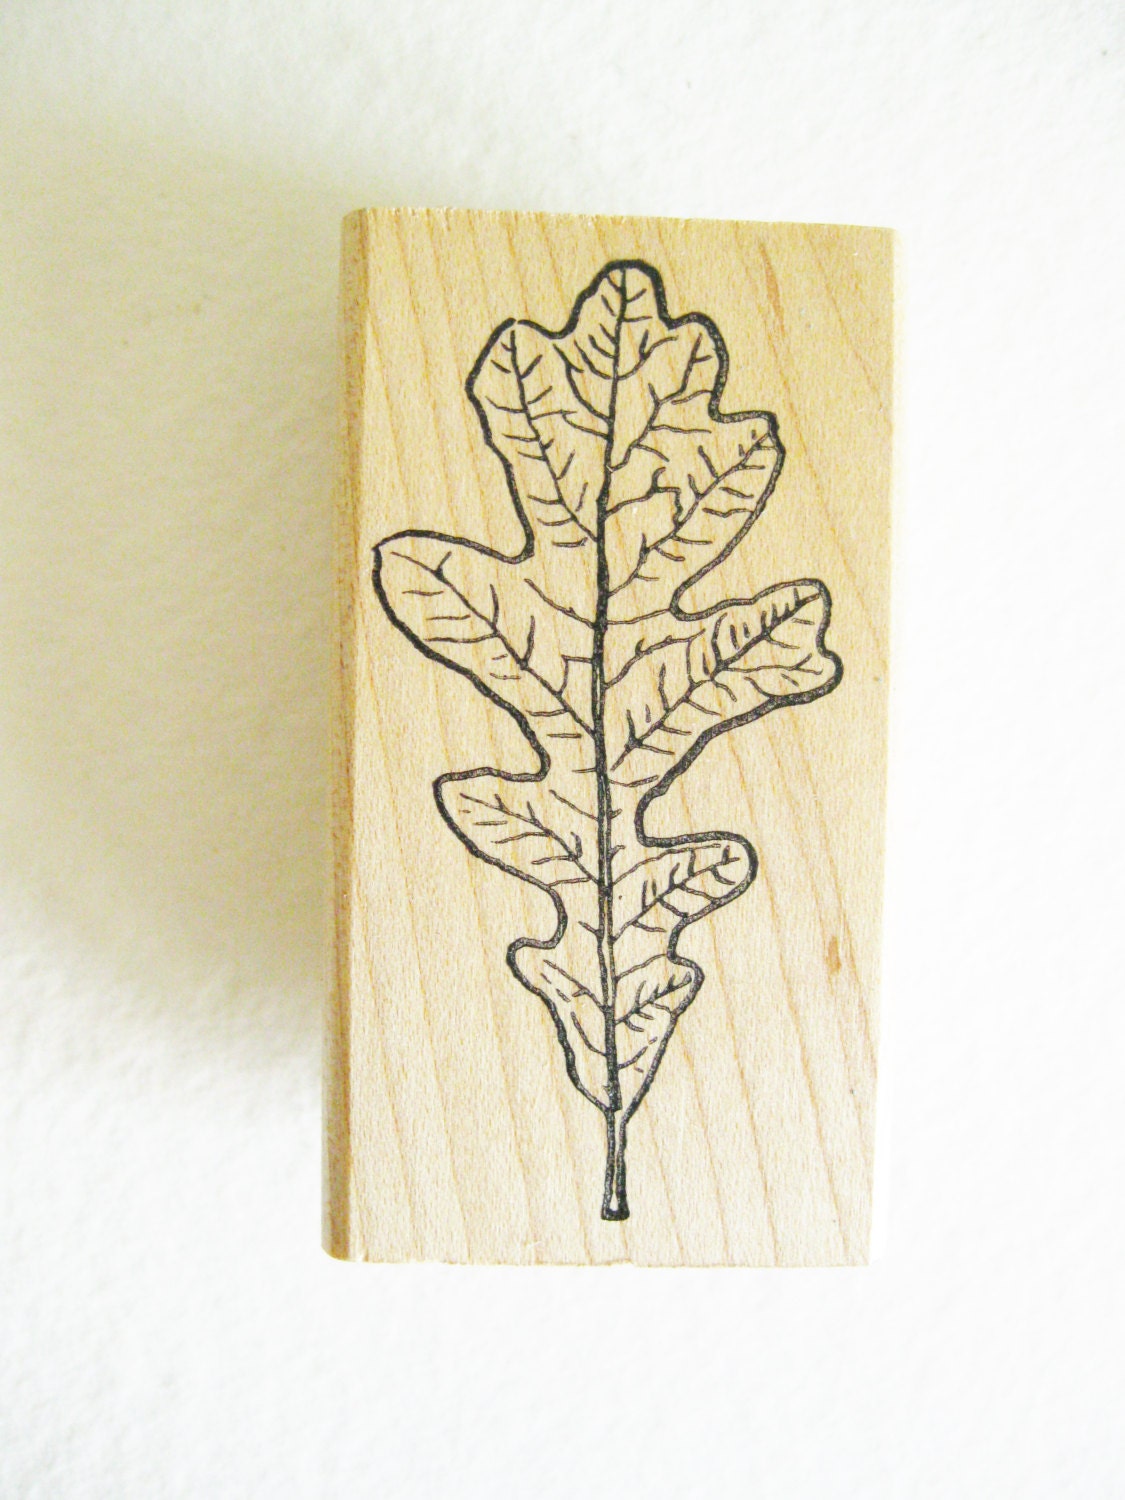 SALE. Oak Leaf Craft Stamp Carved Rubber Good Stamps Wood Mount. Scrapbooking, Card Making. Destash. Art and Craft Supplies. - kathleendaughan